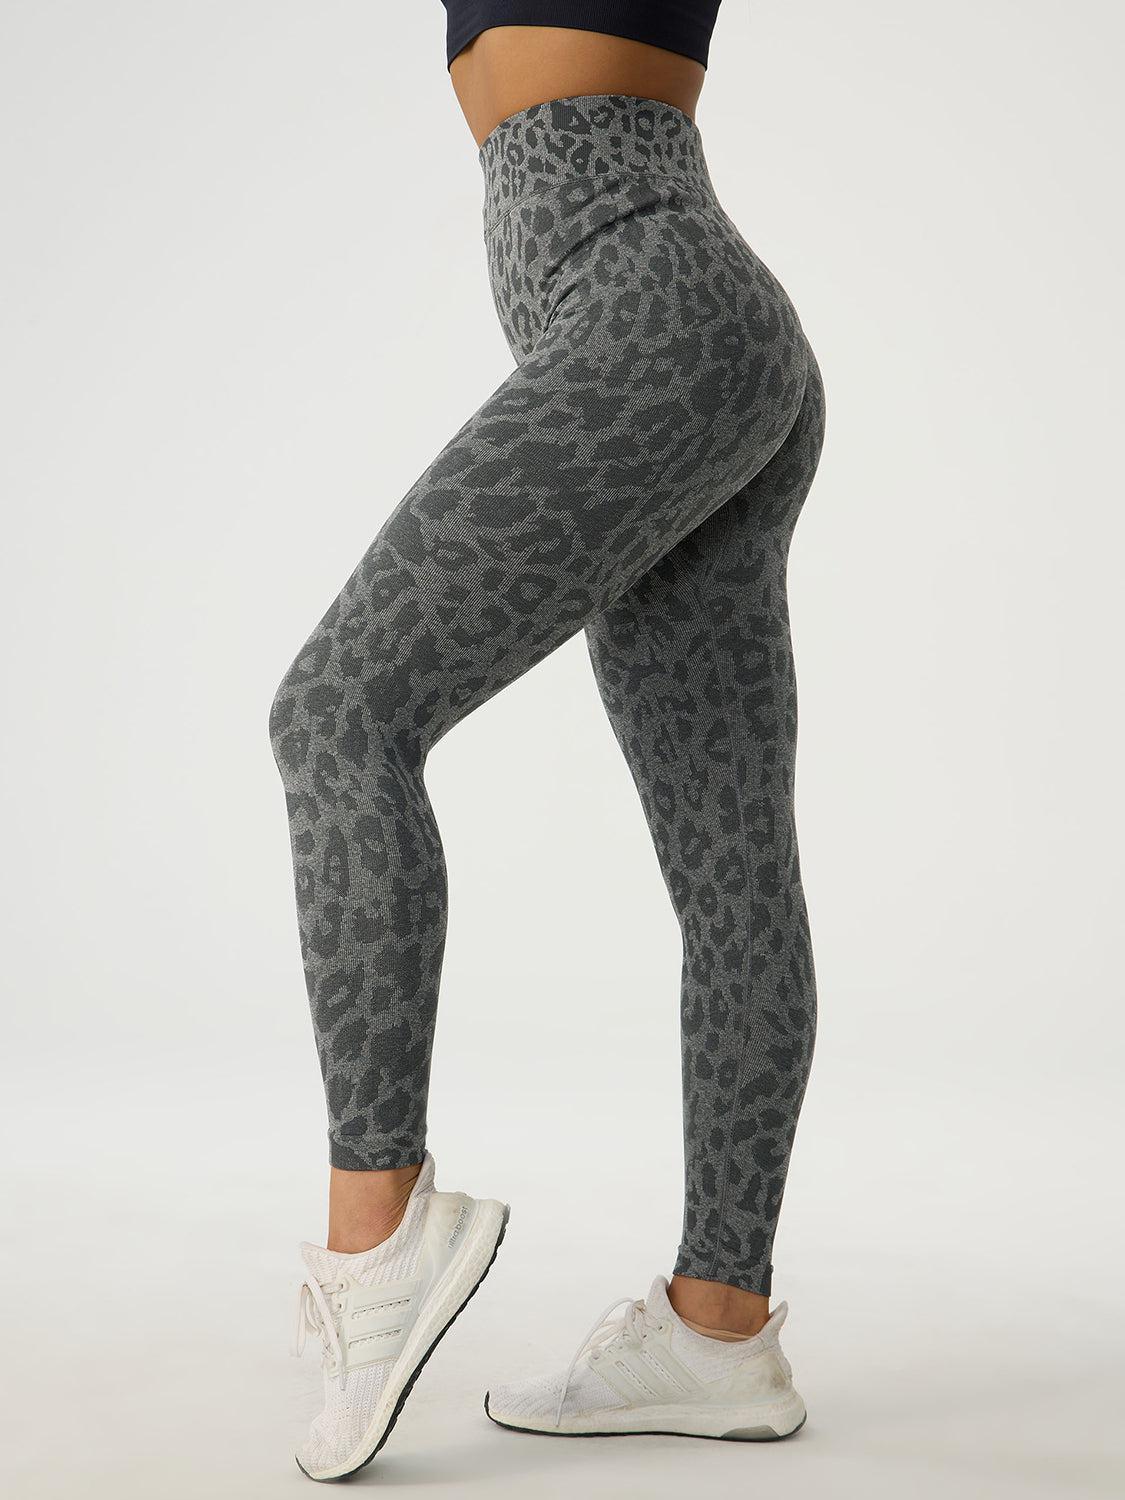 a woman in grey leopard print leggings